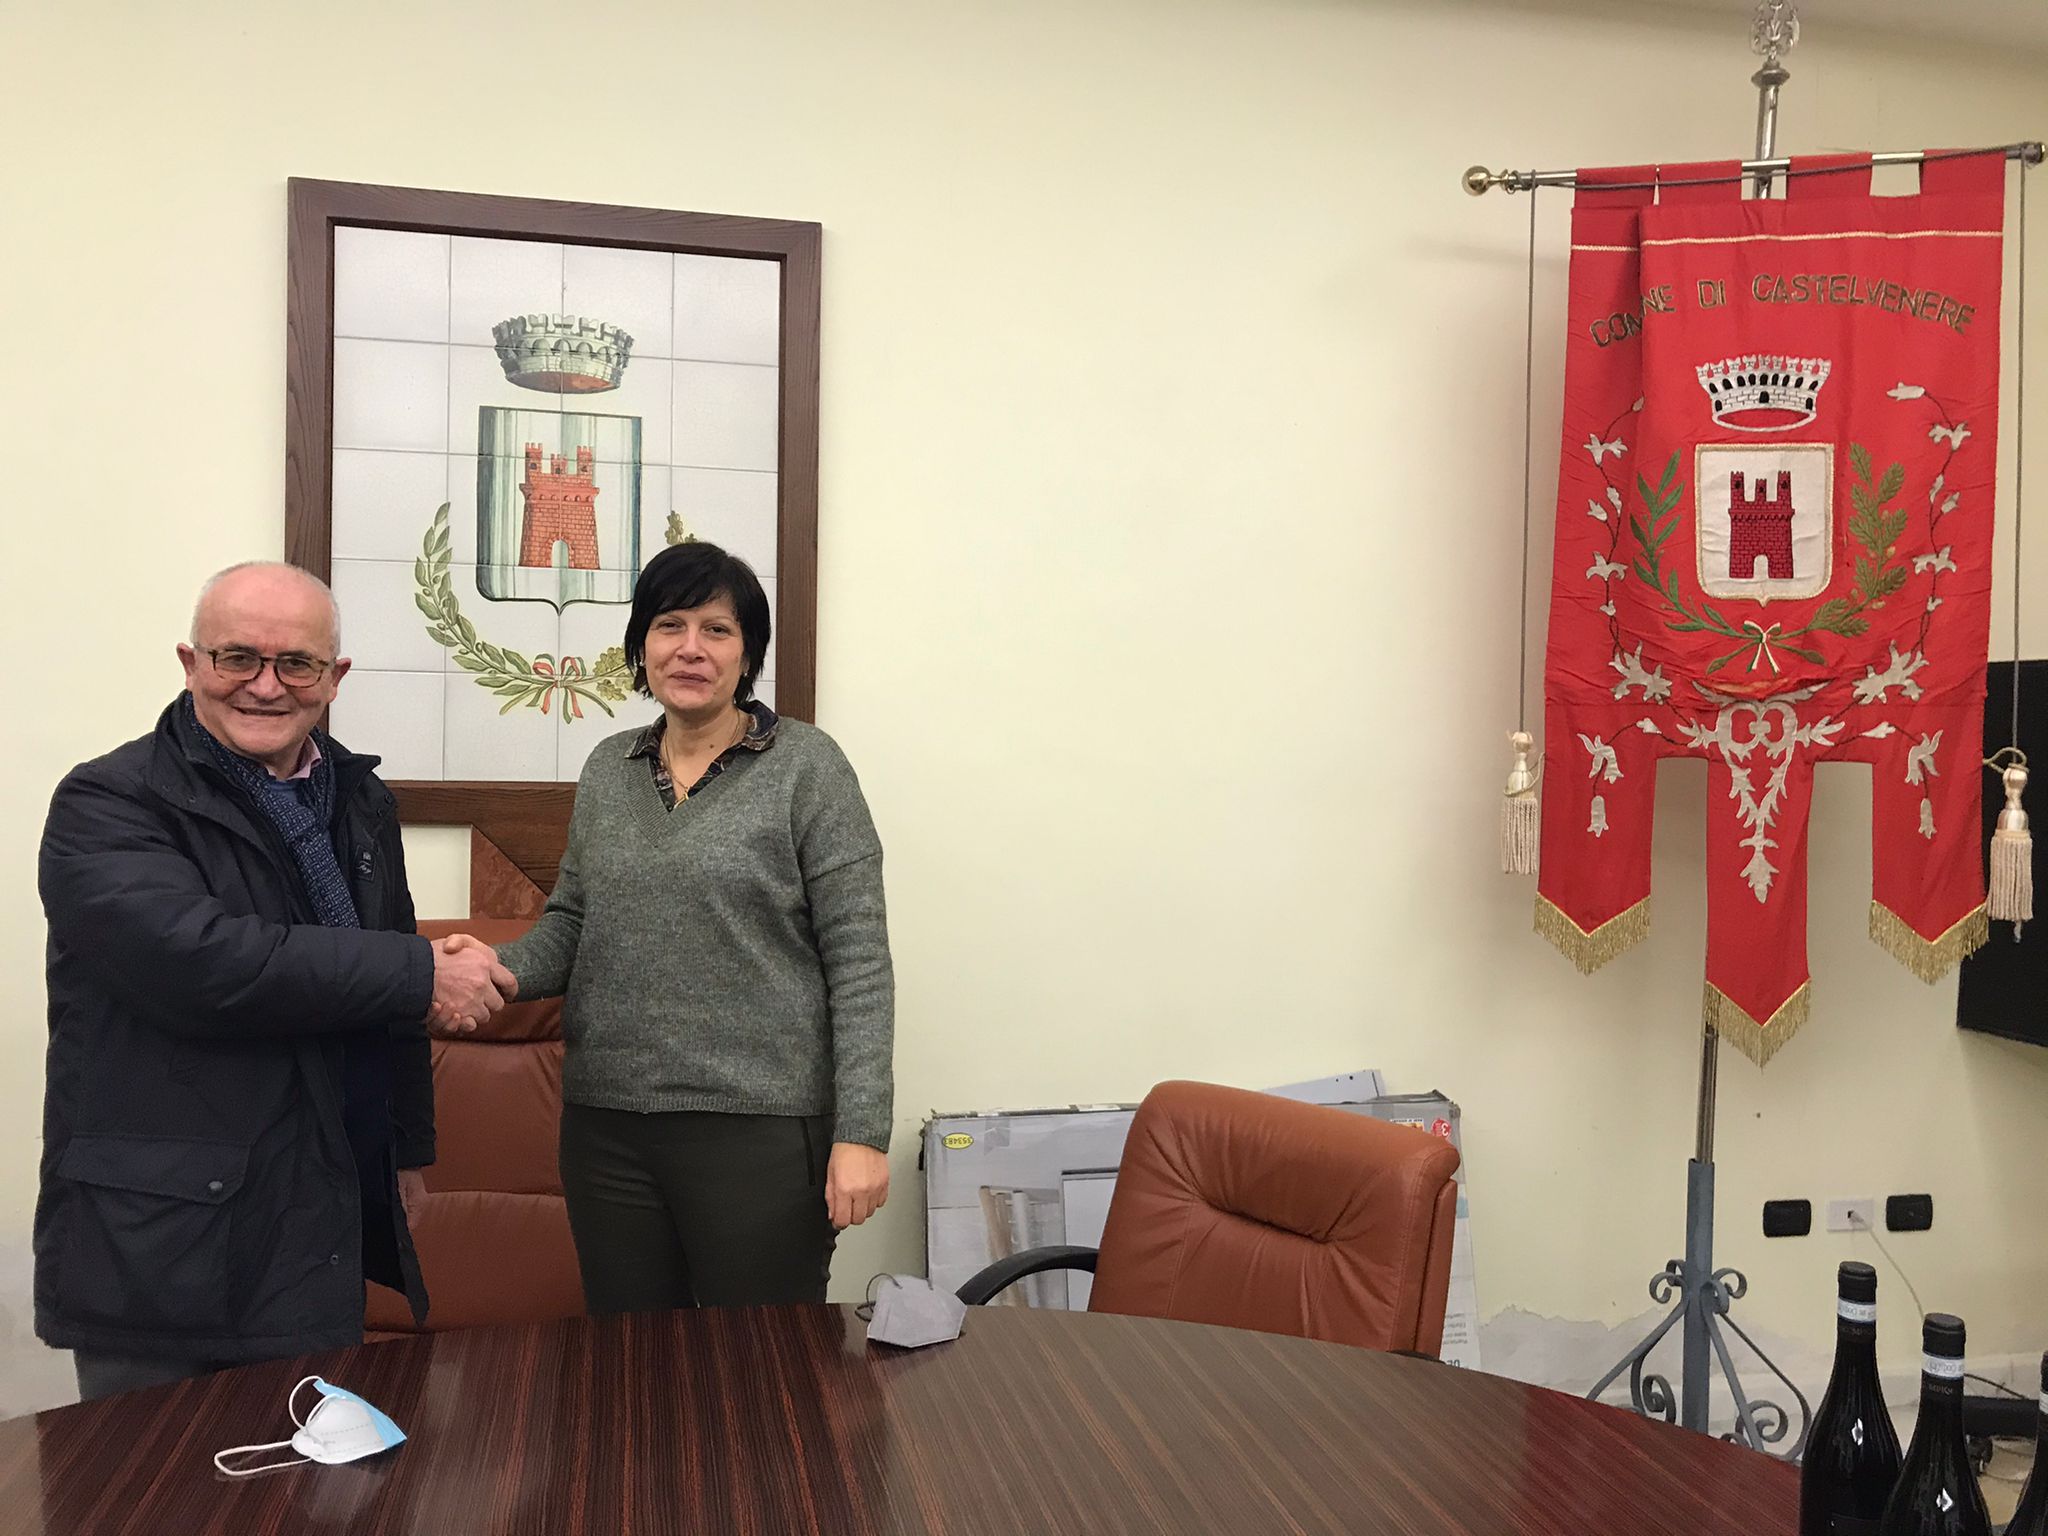 Maria Feleppa di Benevento la nuova Segretaria comunale di Castelvenere